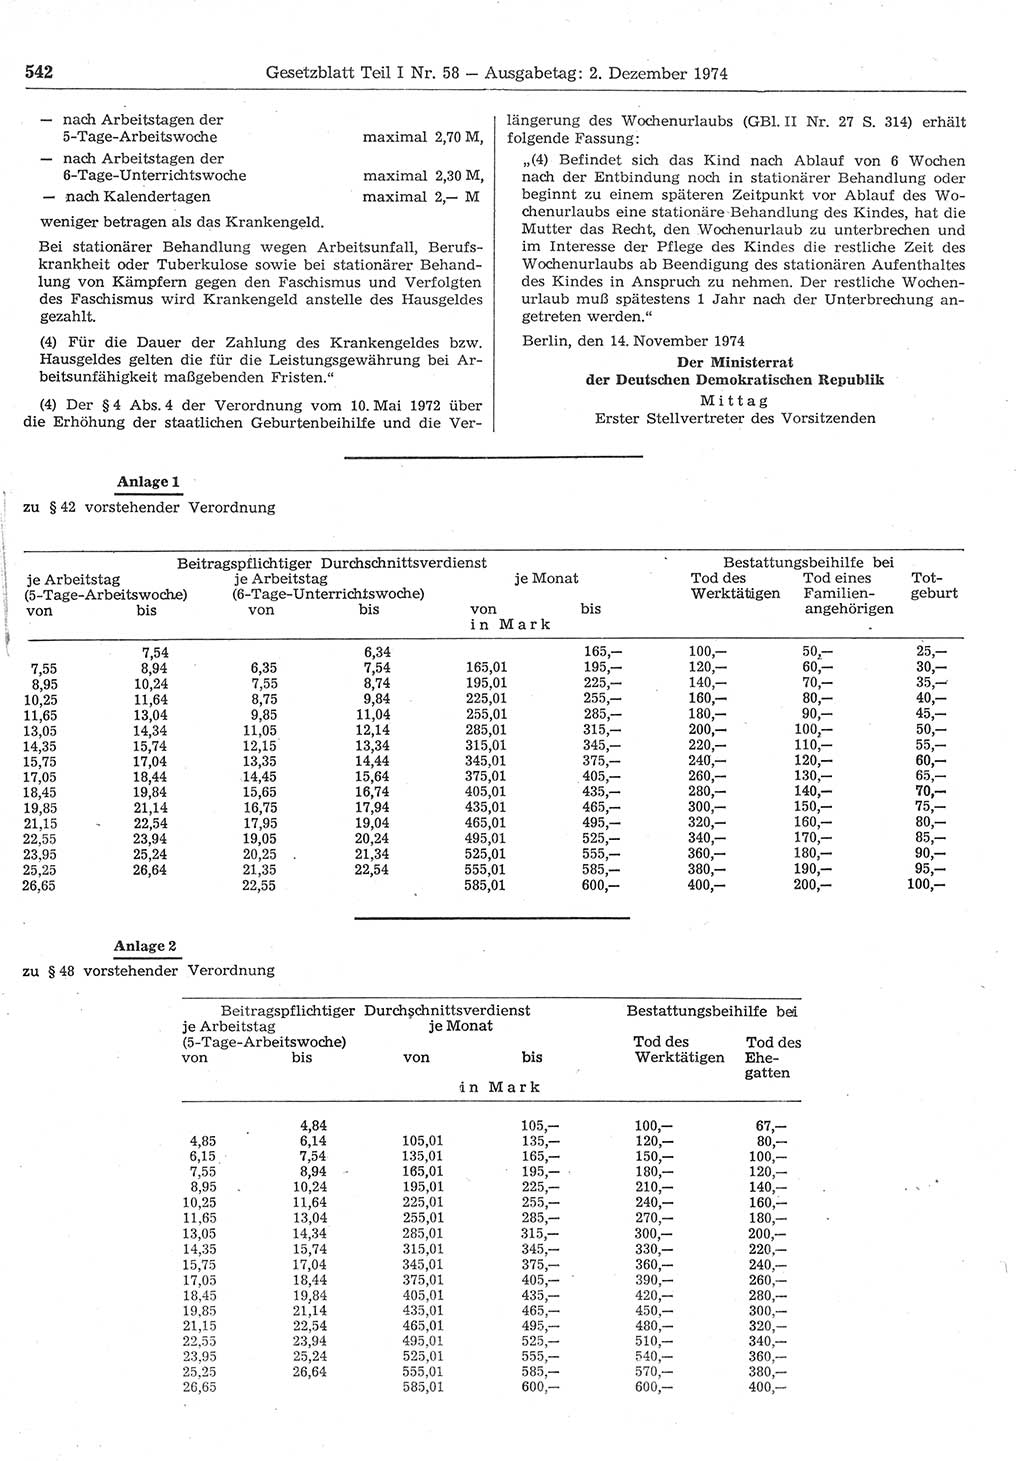 Gesetzblatt (GBl.) der Deutschen Demokratischen Republik (DDR) Teil Ⅰ 1974, Seite 542 (GBl. DDR Ⅰ 1974, S. 542)